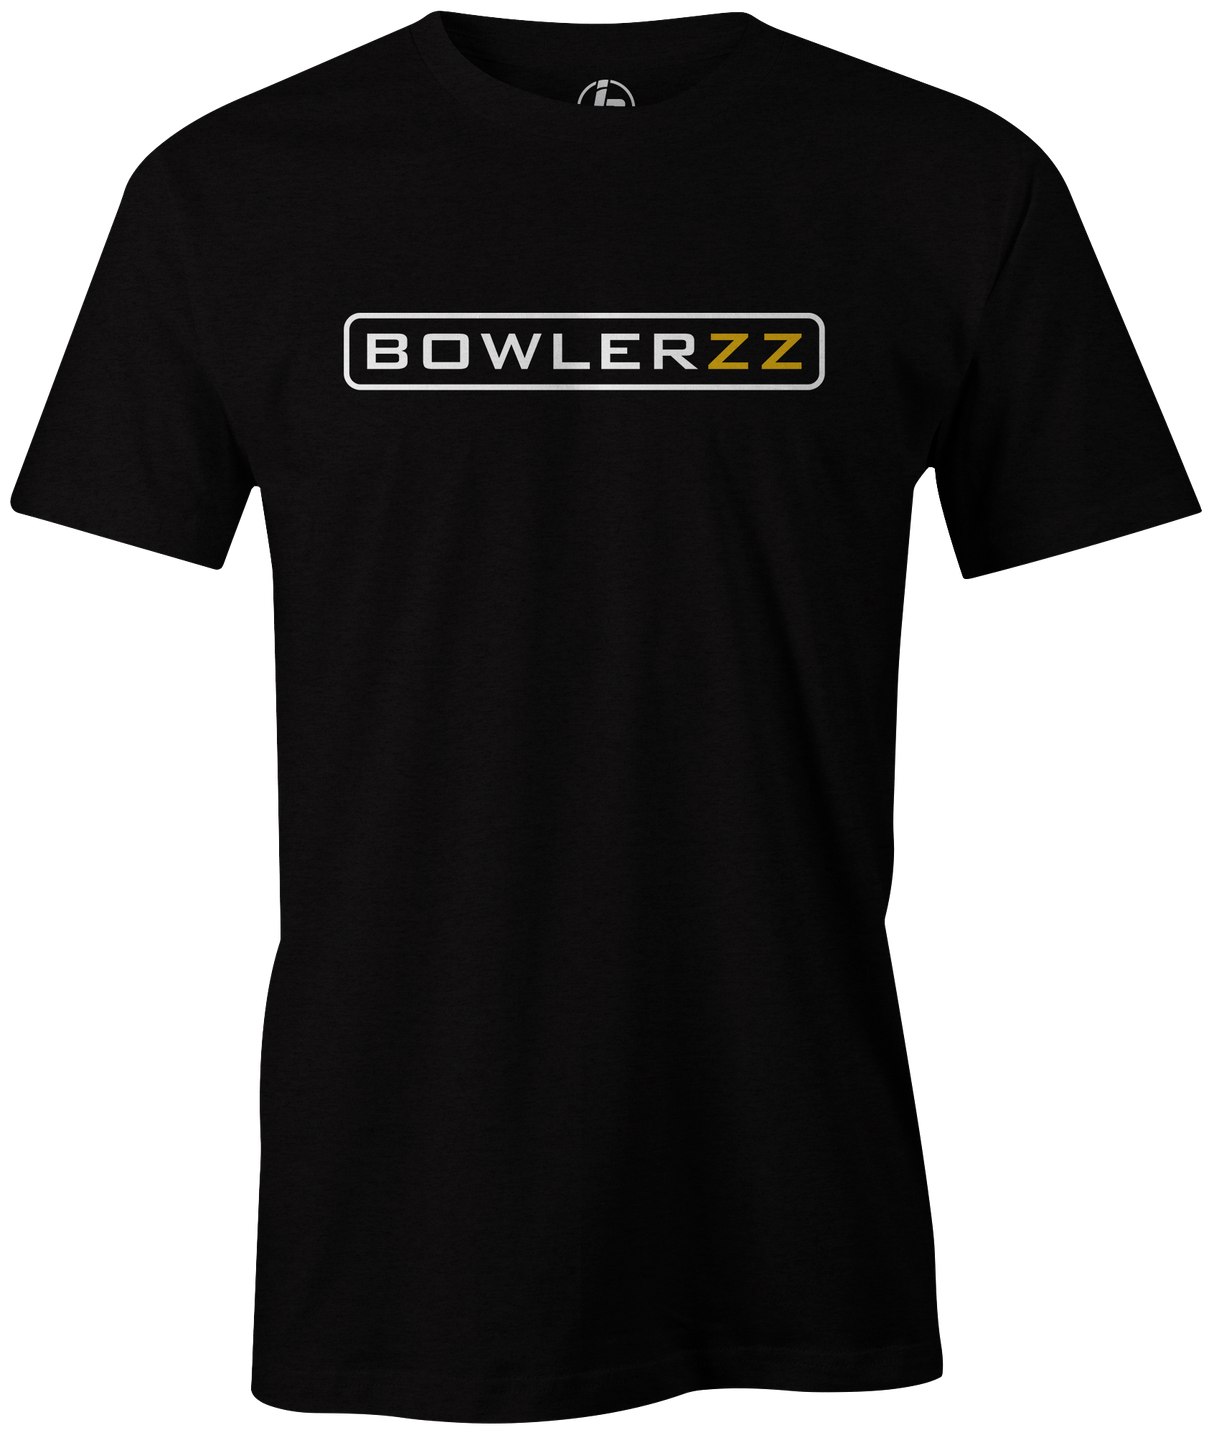 bowlers bowler bowlers bowlerzz brazzers bowling tee tshirt t-shirt bowl 